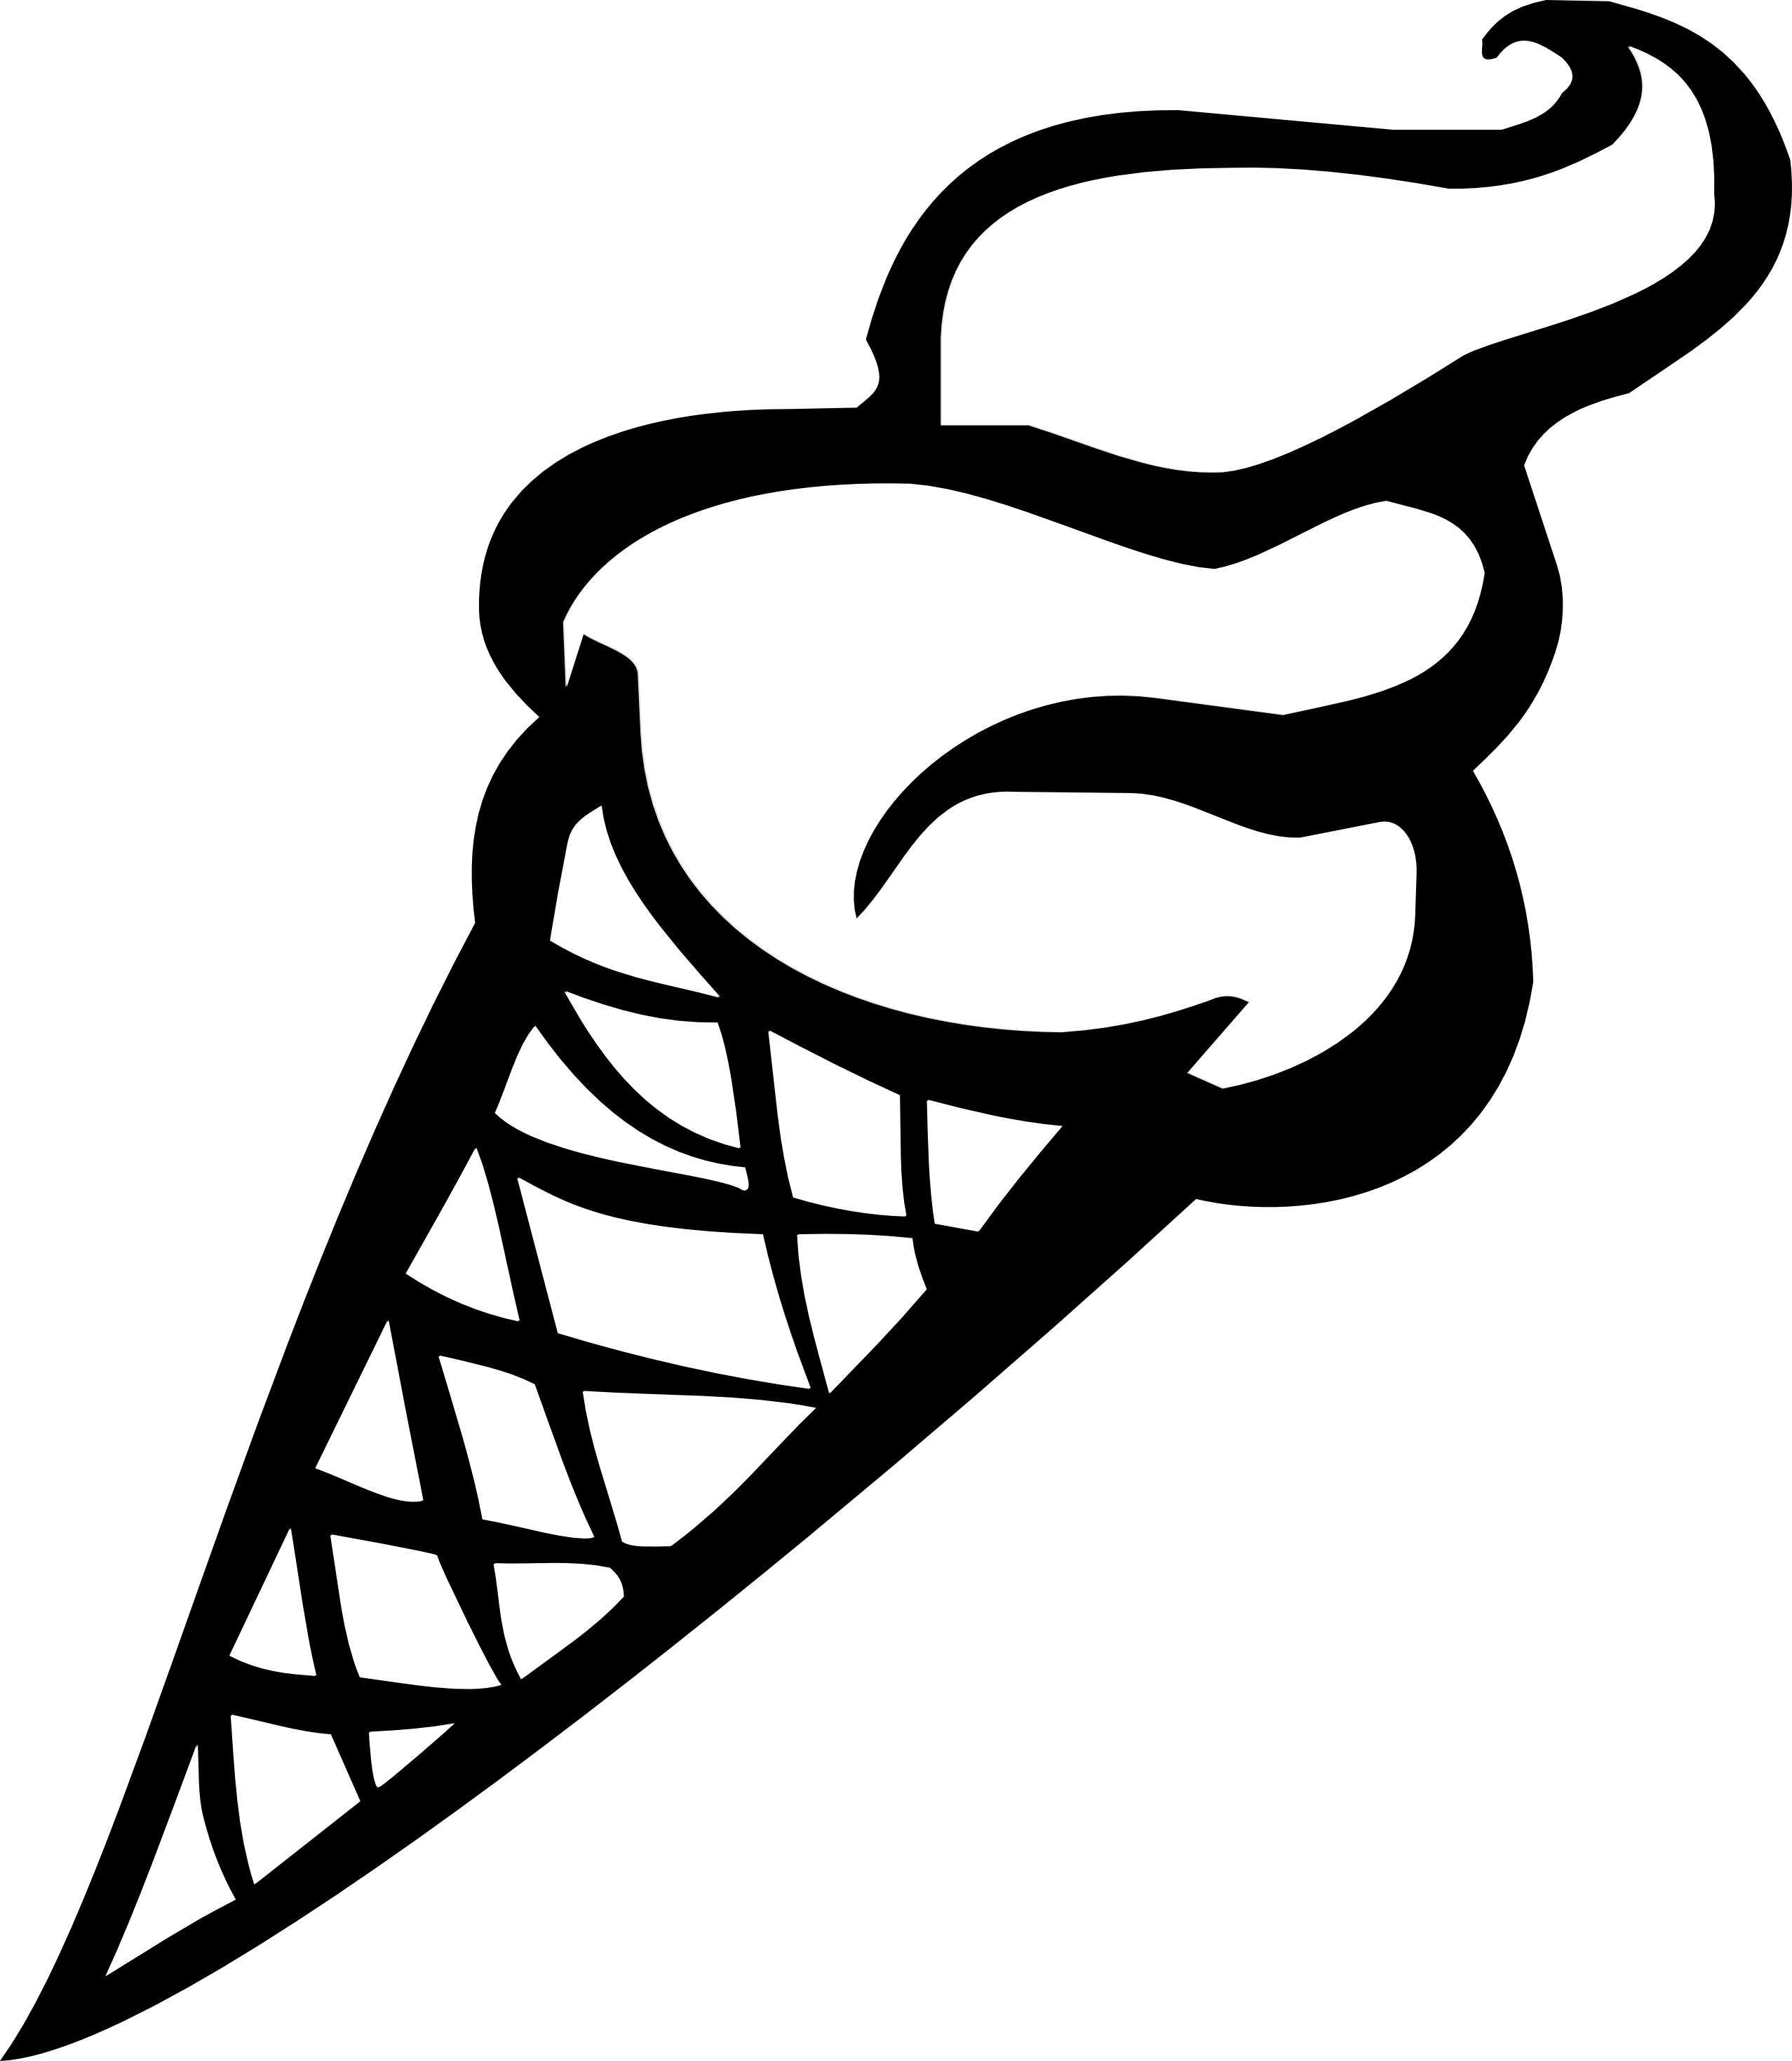 Ice Cream Cone Clipart | Free Download Clip Art | Free Clip Art ...